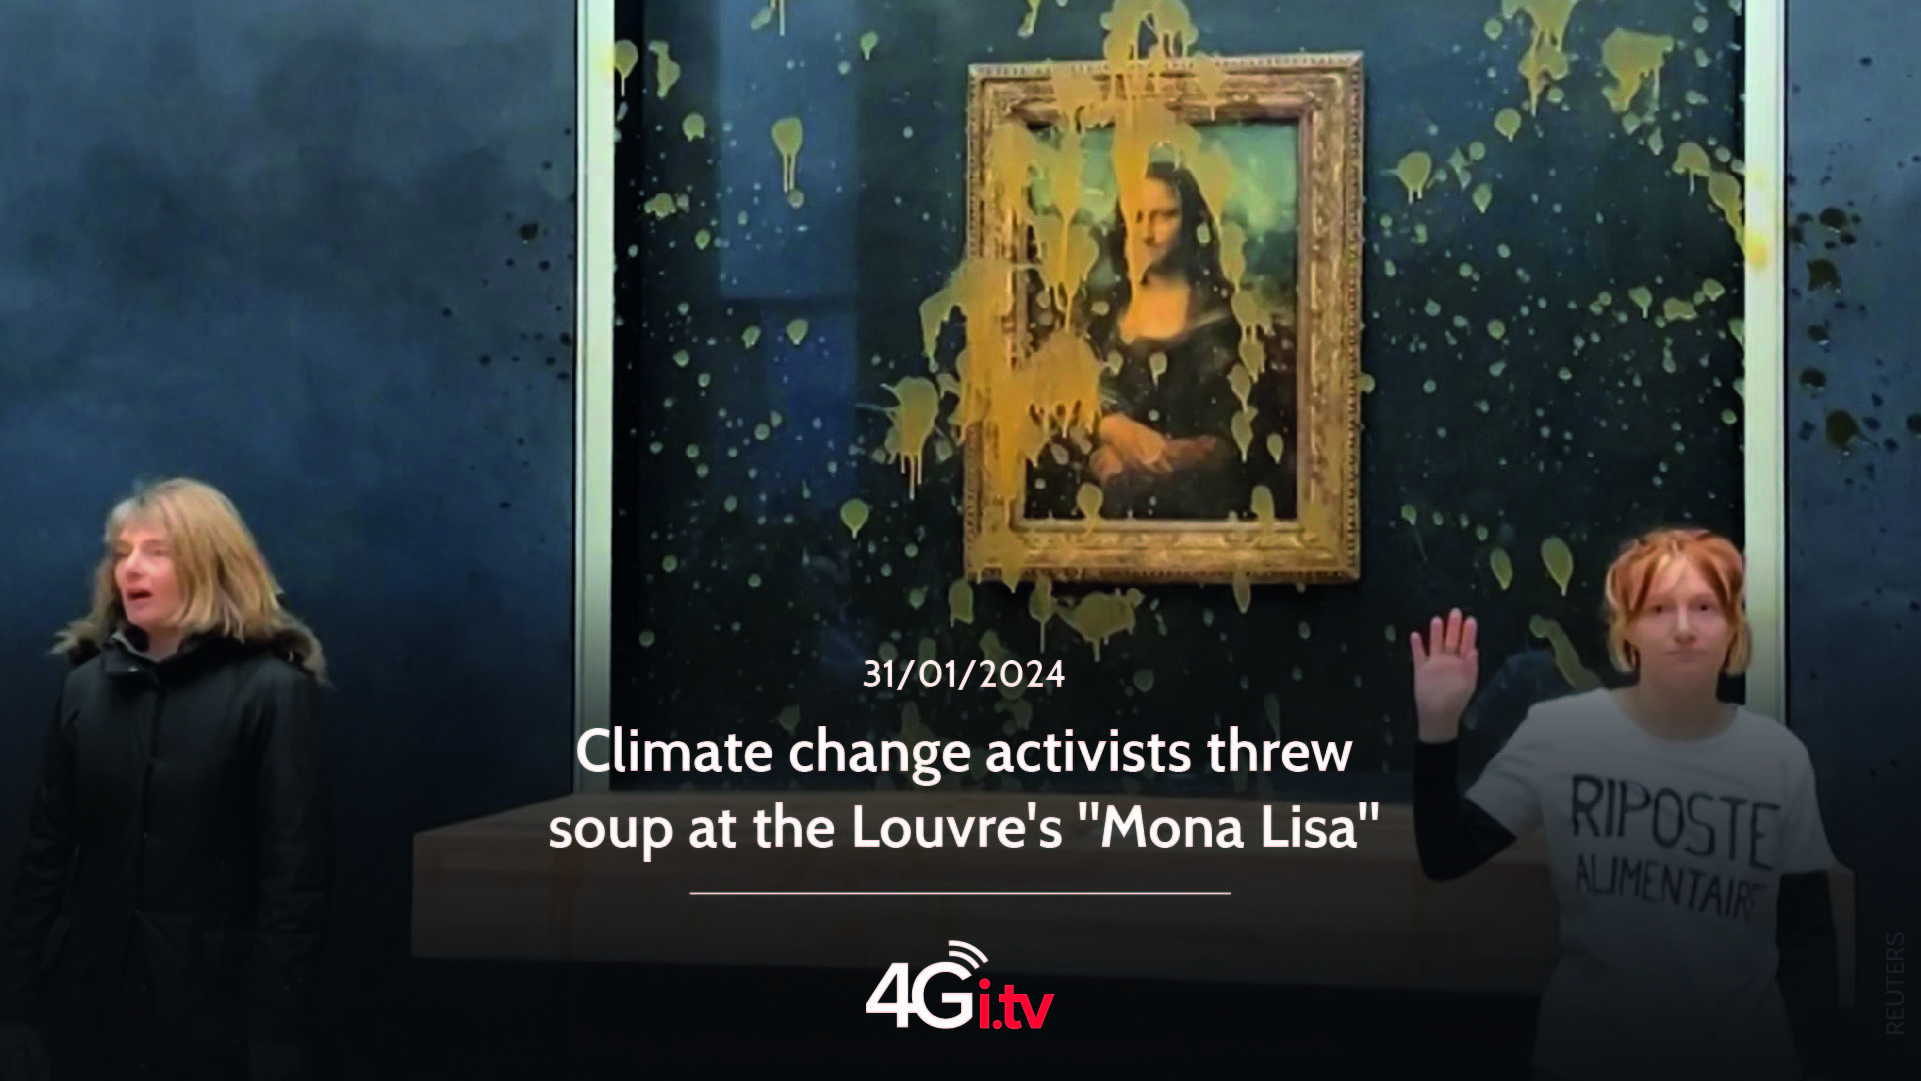 Подробнее о статье Climate change activists threw soup at the Louvre’s “Mona Lisa”